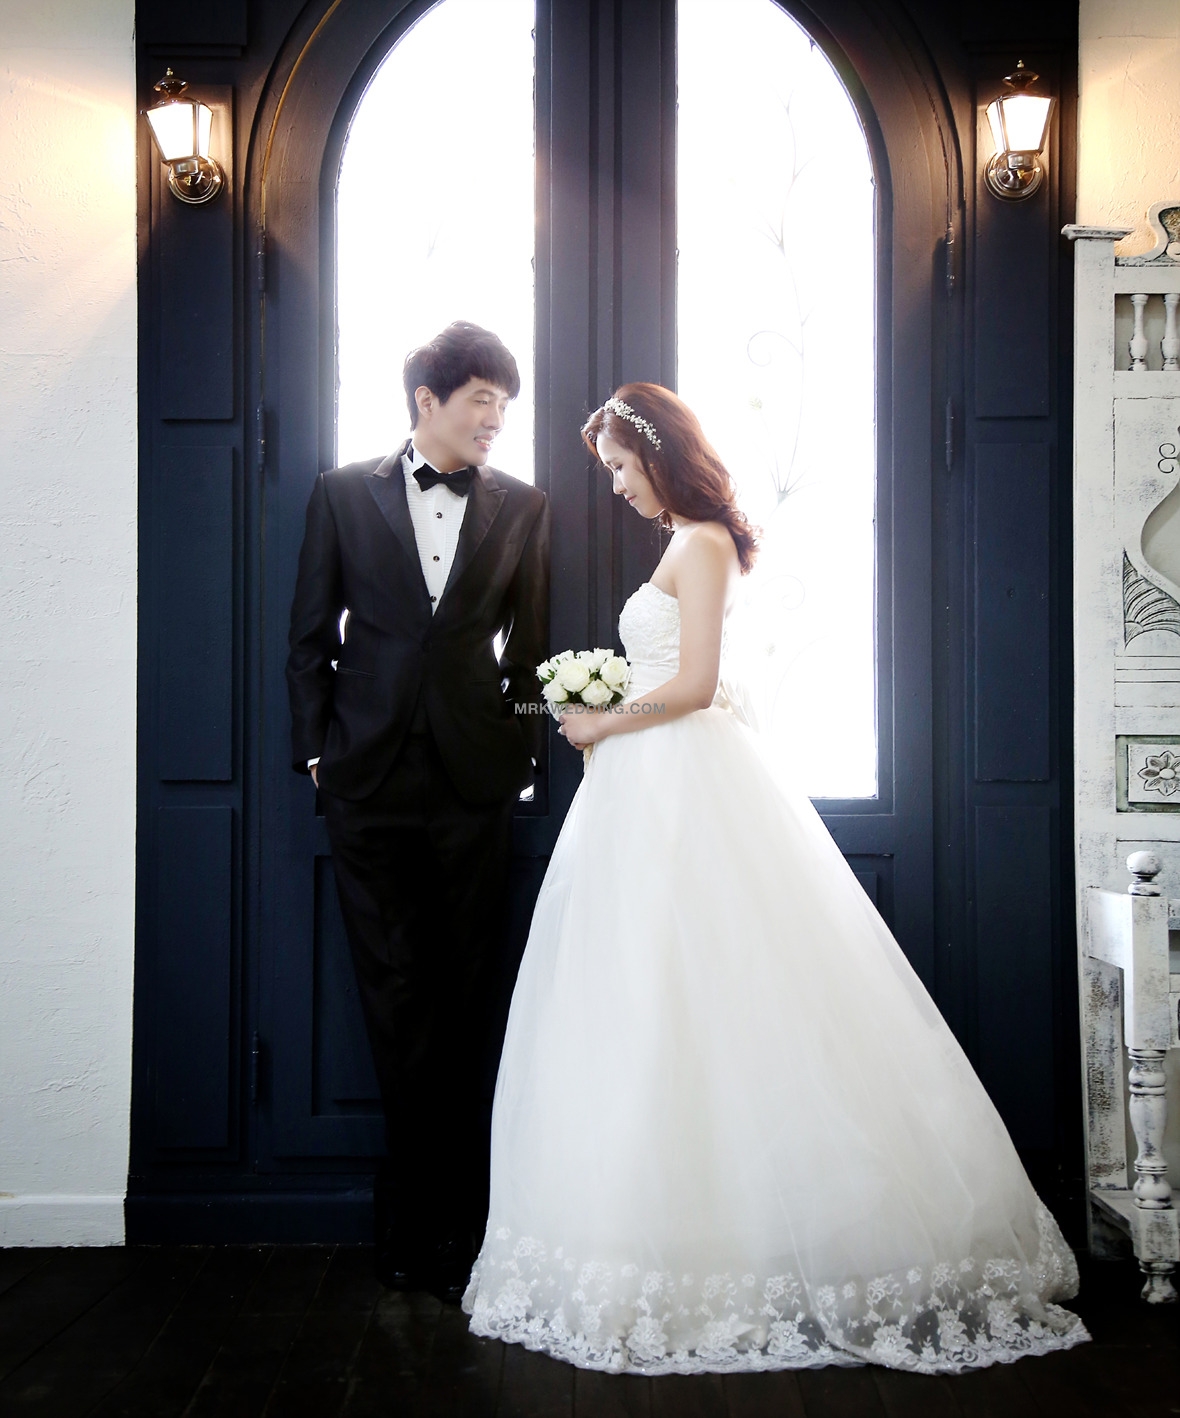 Korea pre wedding (12).jpg